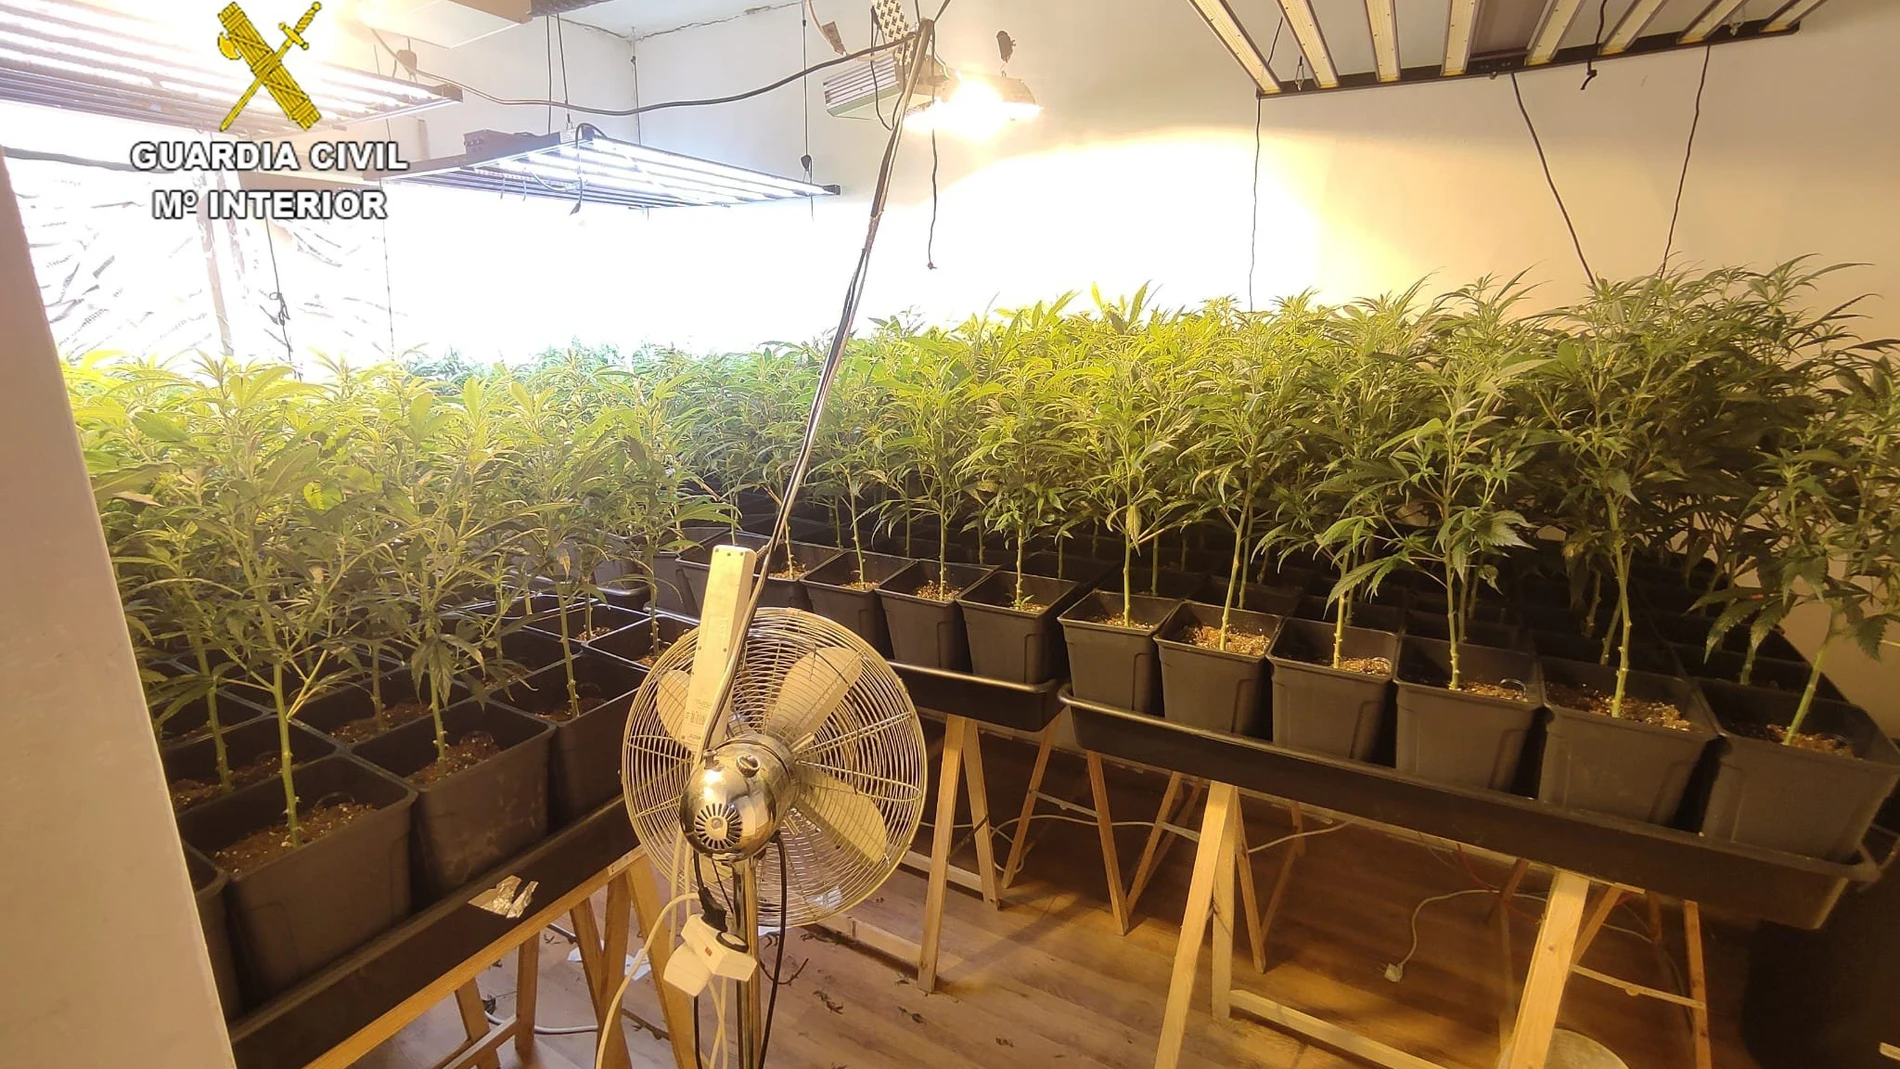 Hallan más de 1.700 plantas de marihuana en dos domicilios en Escalona (Toledo)